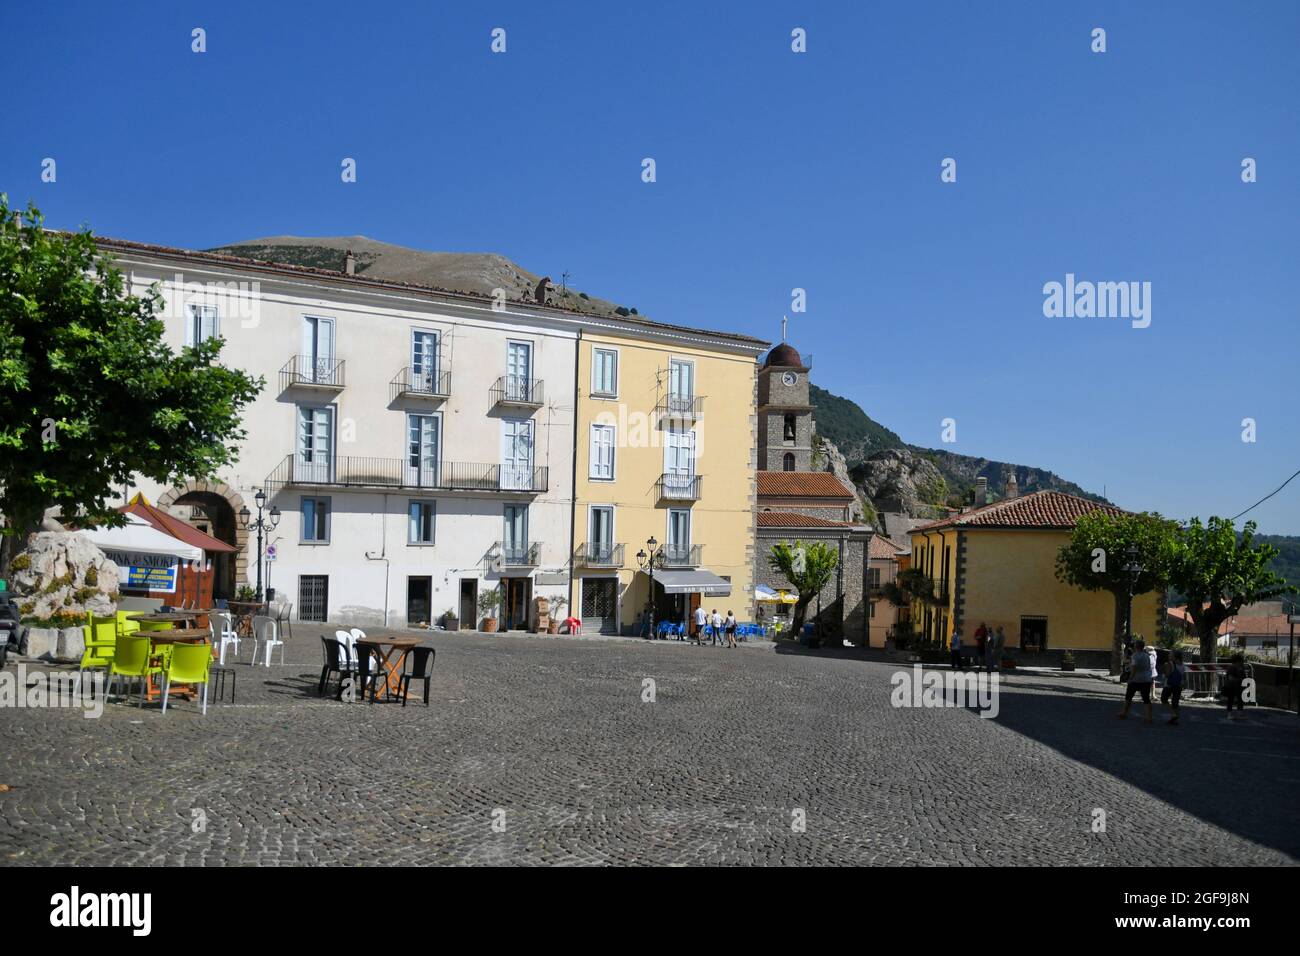 Castelsaraceno, Italie, 08/04/2021. La place principale d'une ville de montagne dans la province de Potenza. Certains touristes vont dans un café pour une pause. Banque D'Images